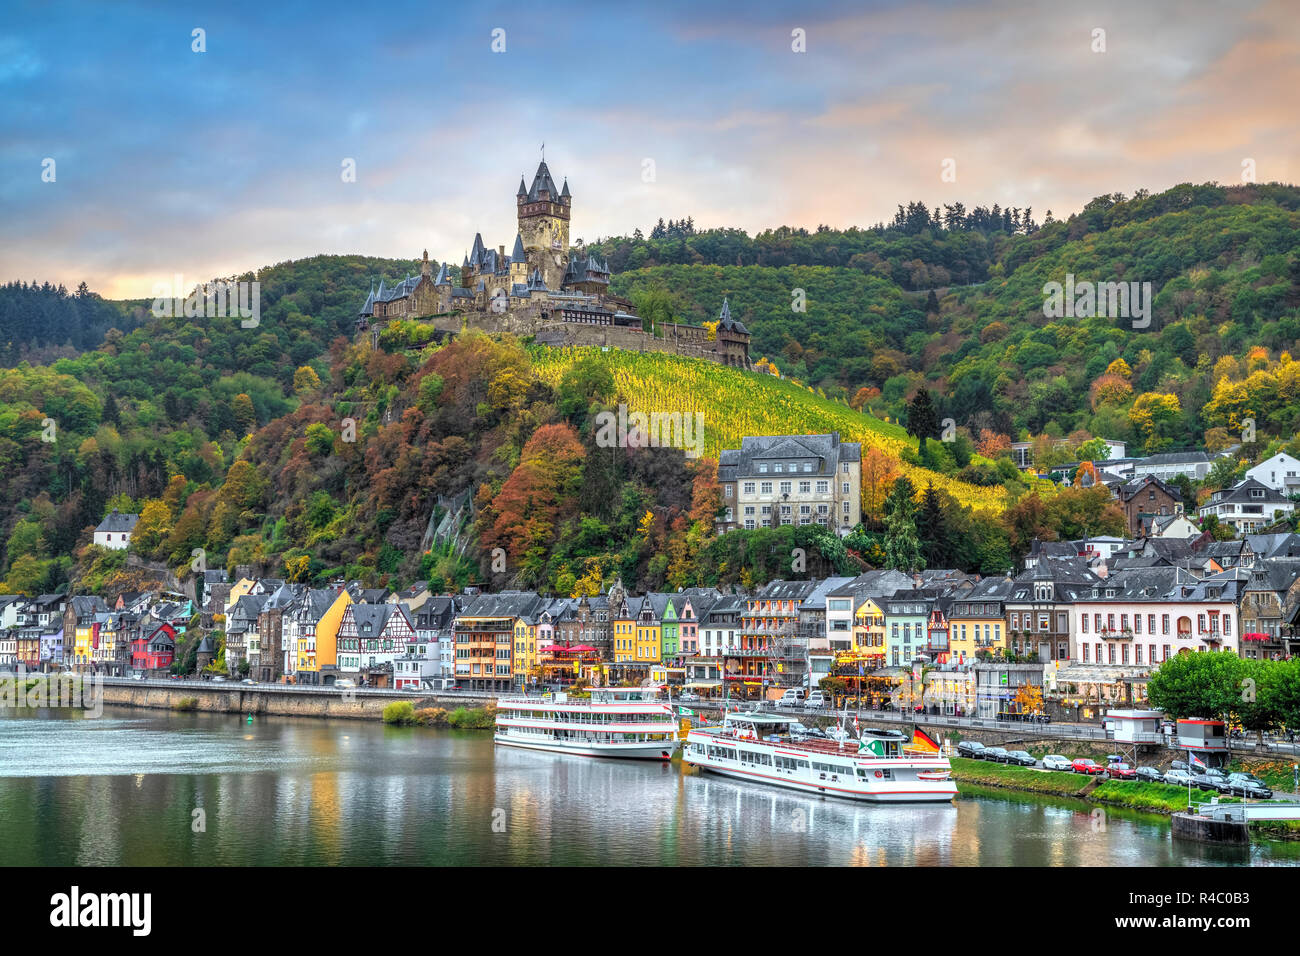 Cochem in autunno, Germania. Paesaggio con fiume Moselle, case colorate sul terrapieno e Castello di Cochem Foto Stock